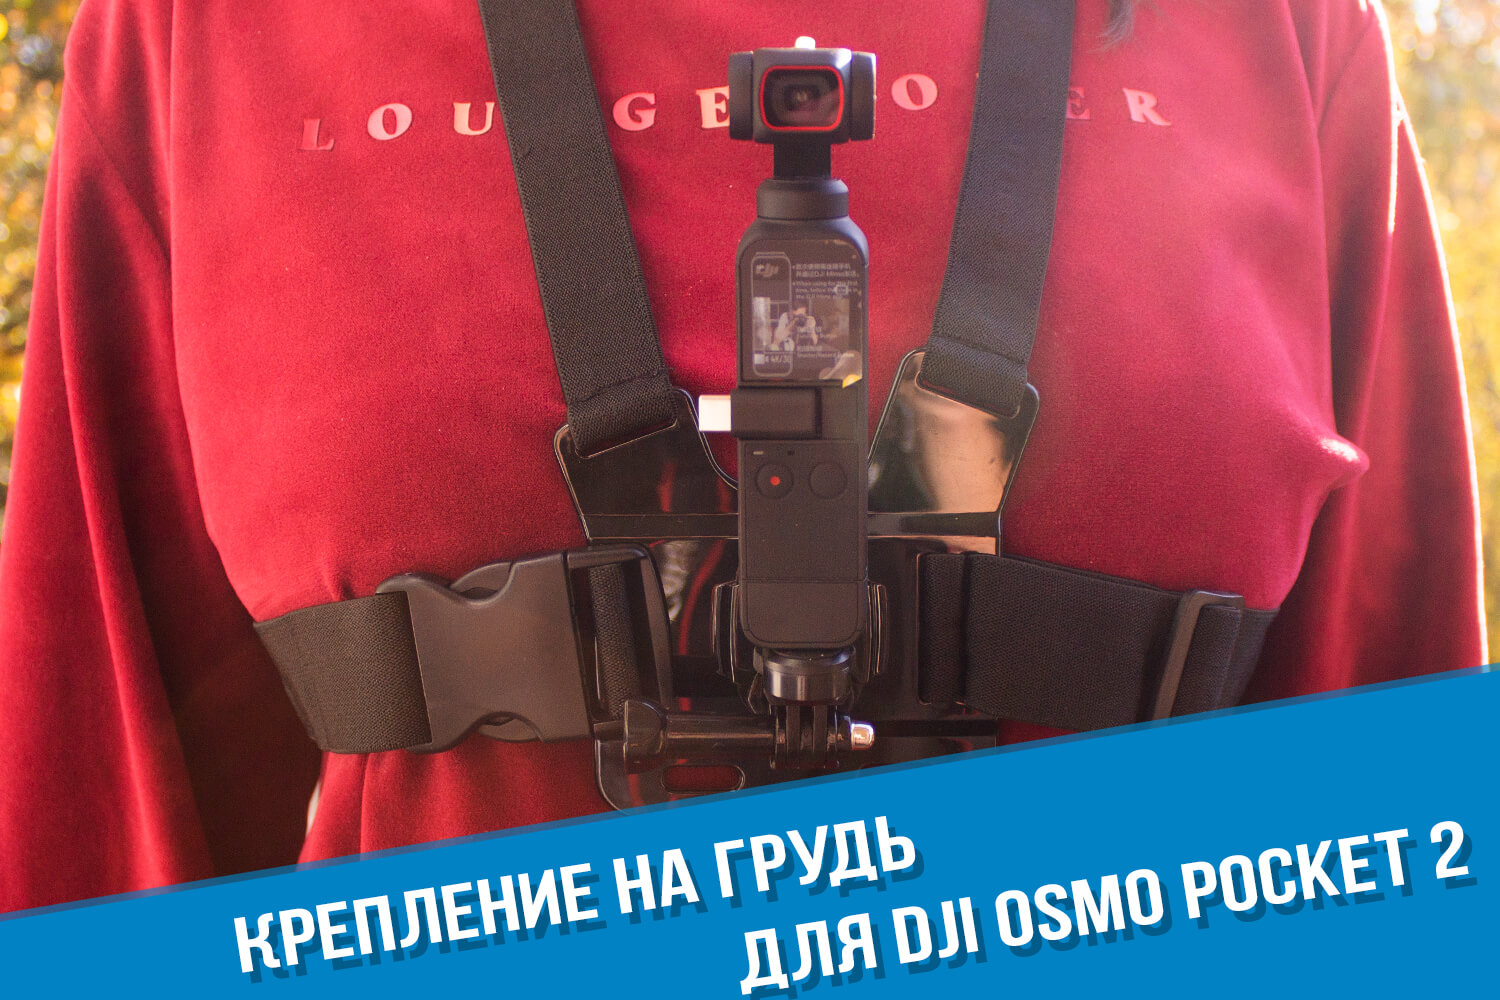 Крепление на грудь для камеры DJI Osmo Pocket 2